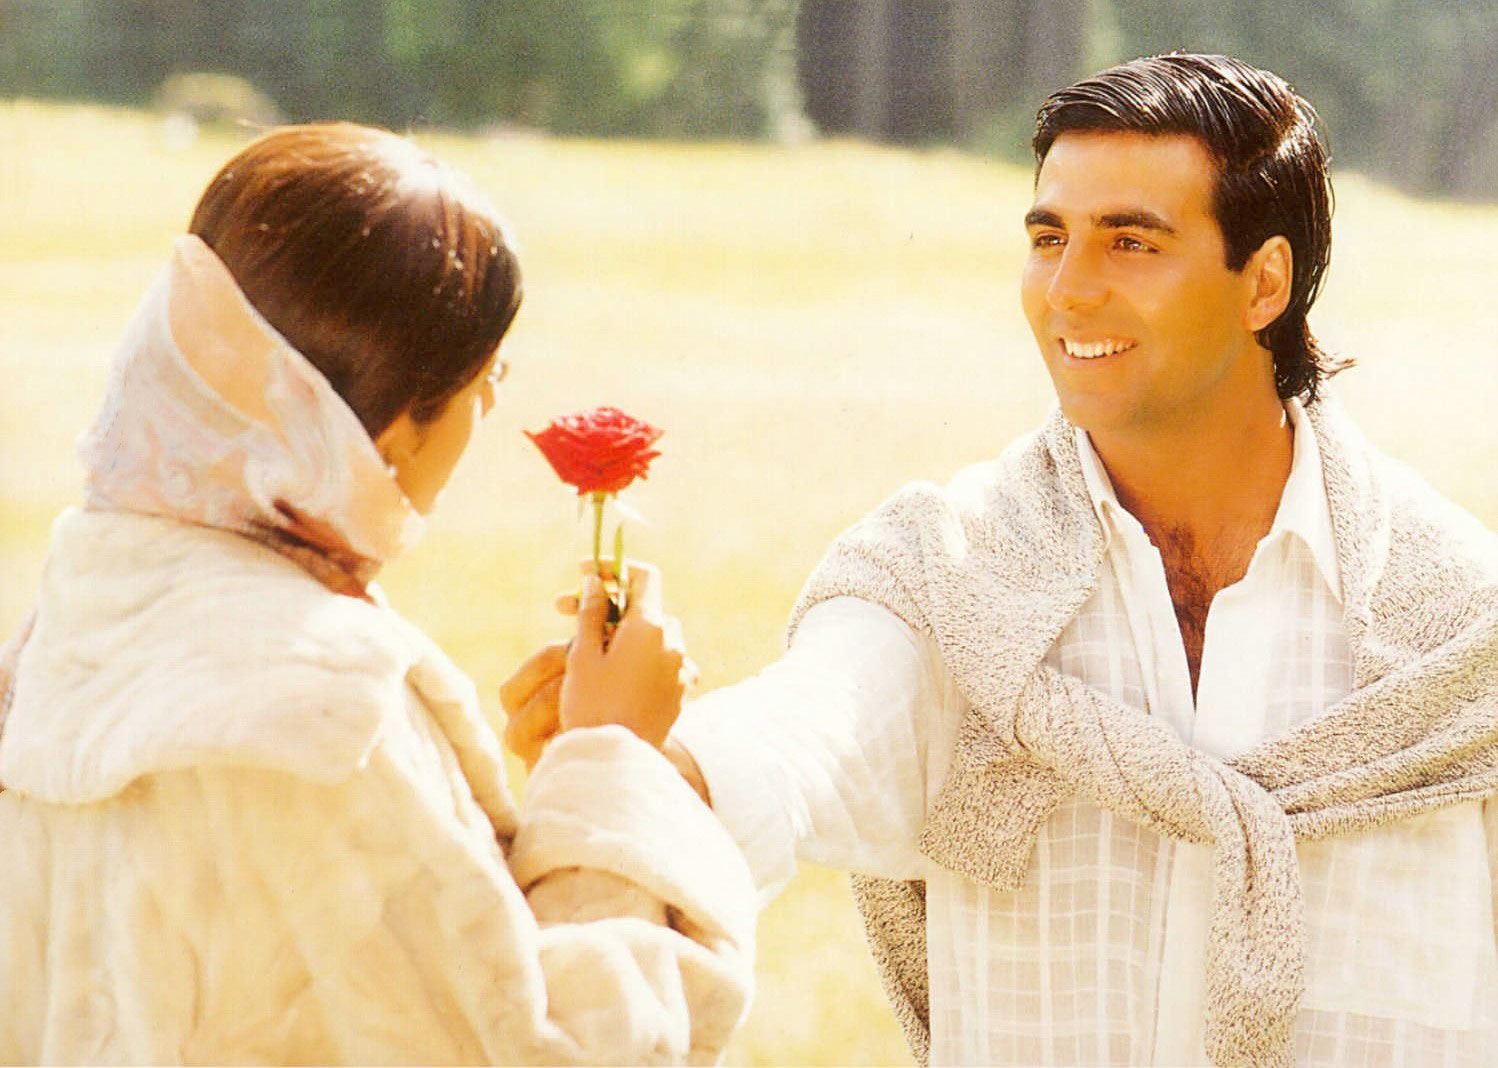 آکشی کومار در حال دادن گل به شیلپا شتی در فیلم تپش قلب